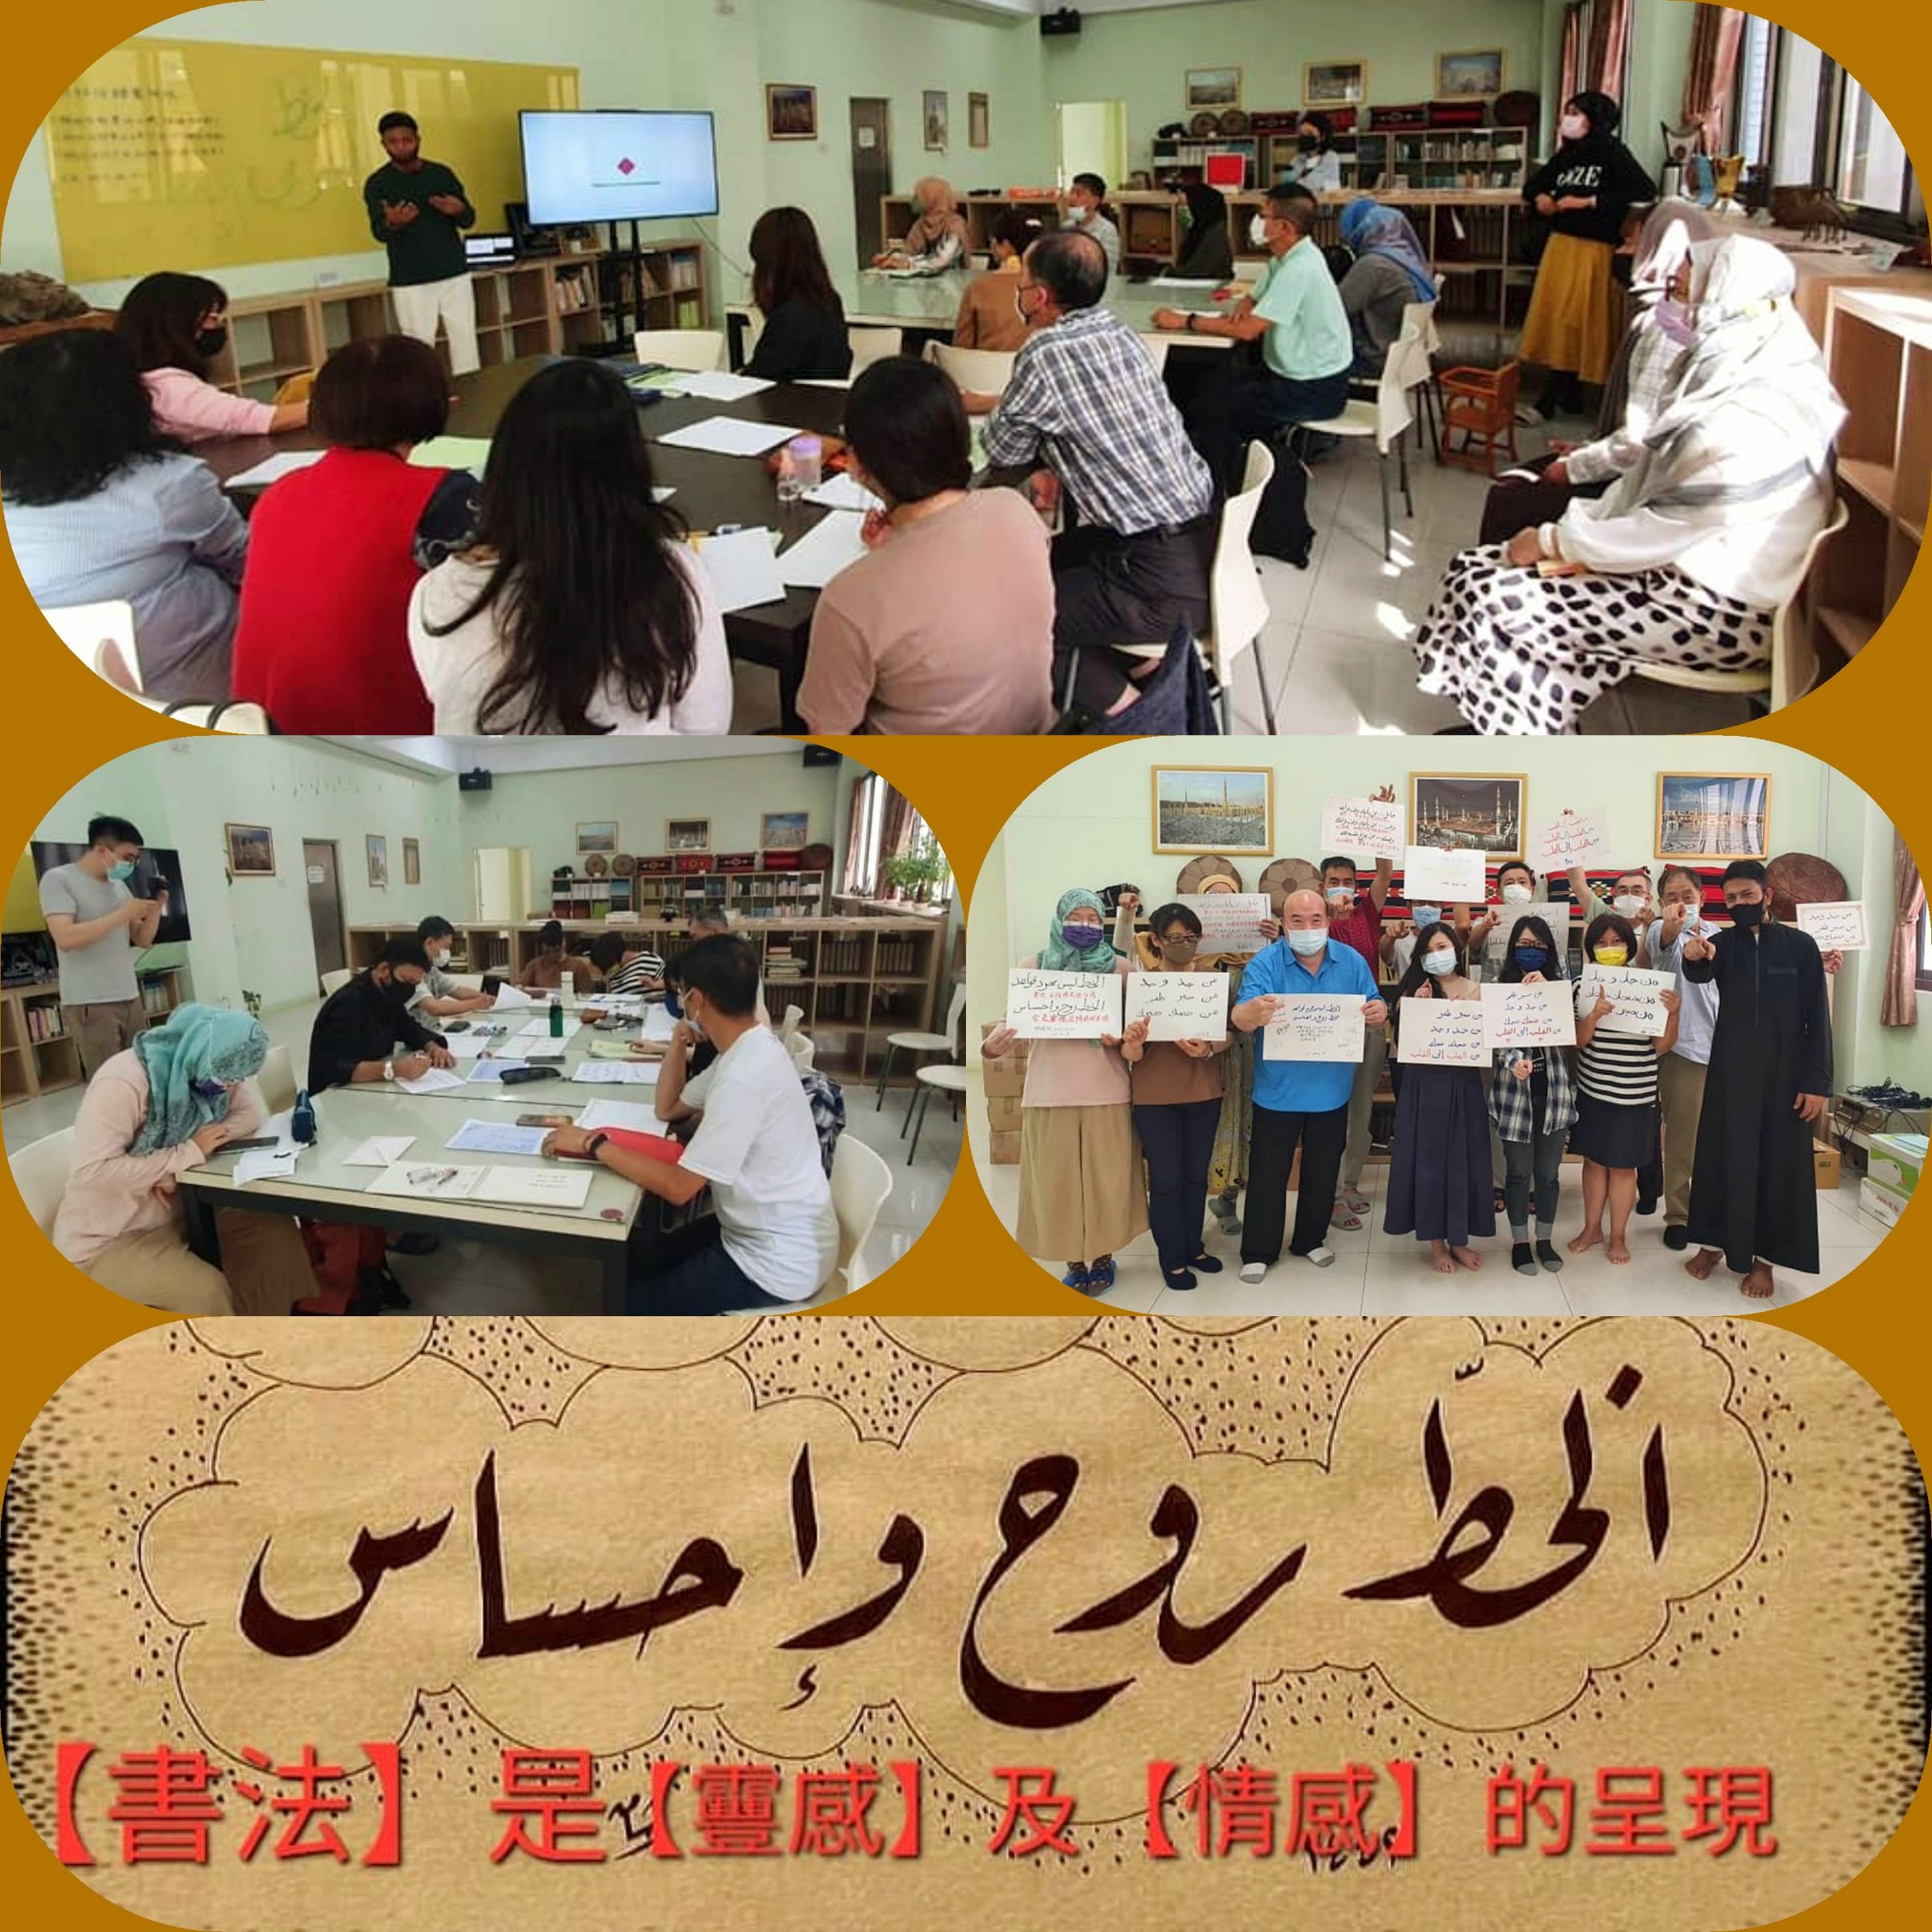 أطلق مسجد تايجون في تايوان الدورة الثانية لـ"الخط العربي وفنونه" لرغبة المشاركين في الدورة الأولى على مواصلة التعلم وعدم التوقف.